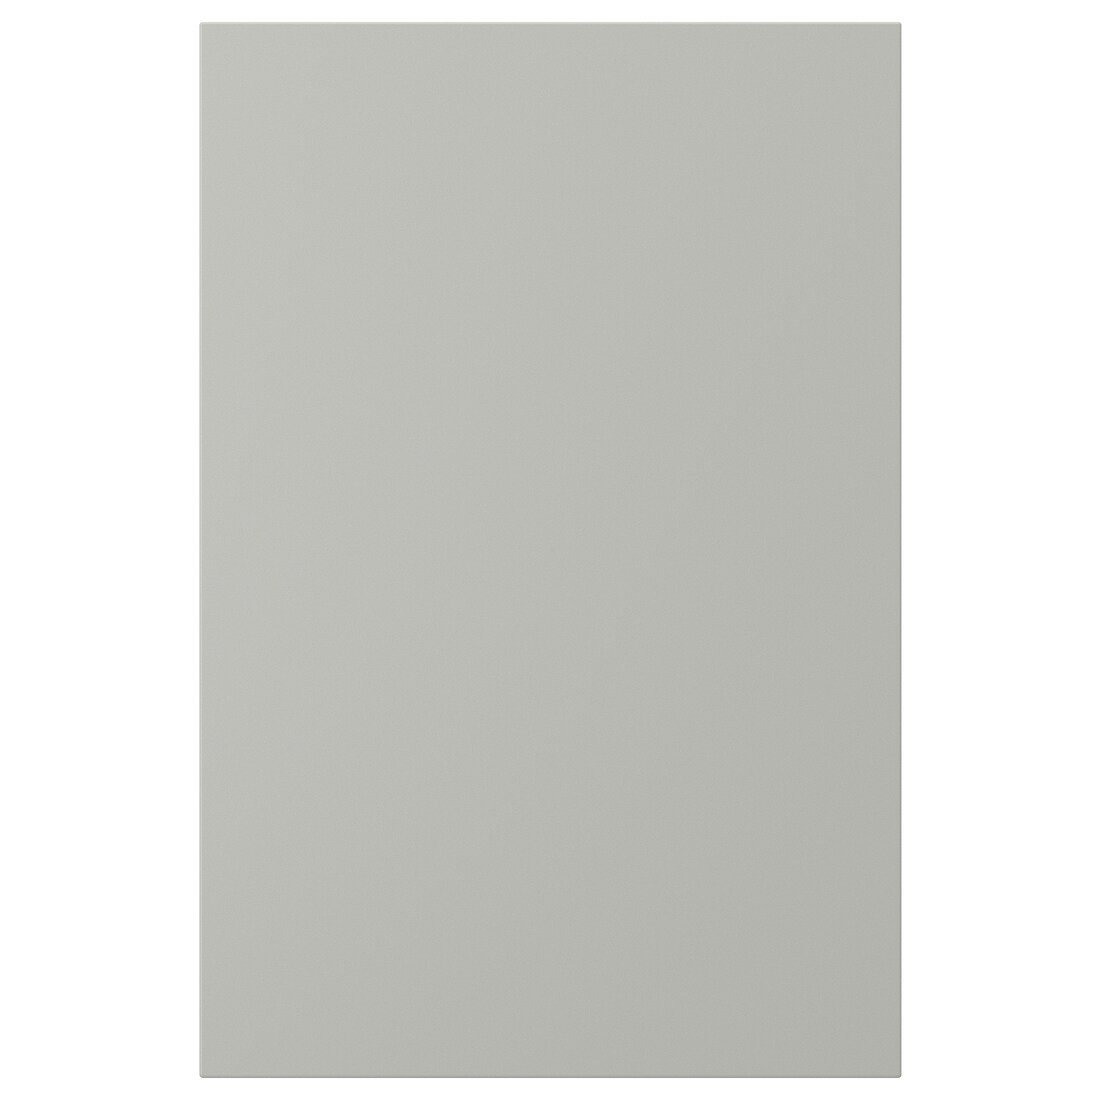 HAVSTORP Дверь, светло-серый, 40x60 см